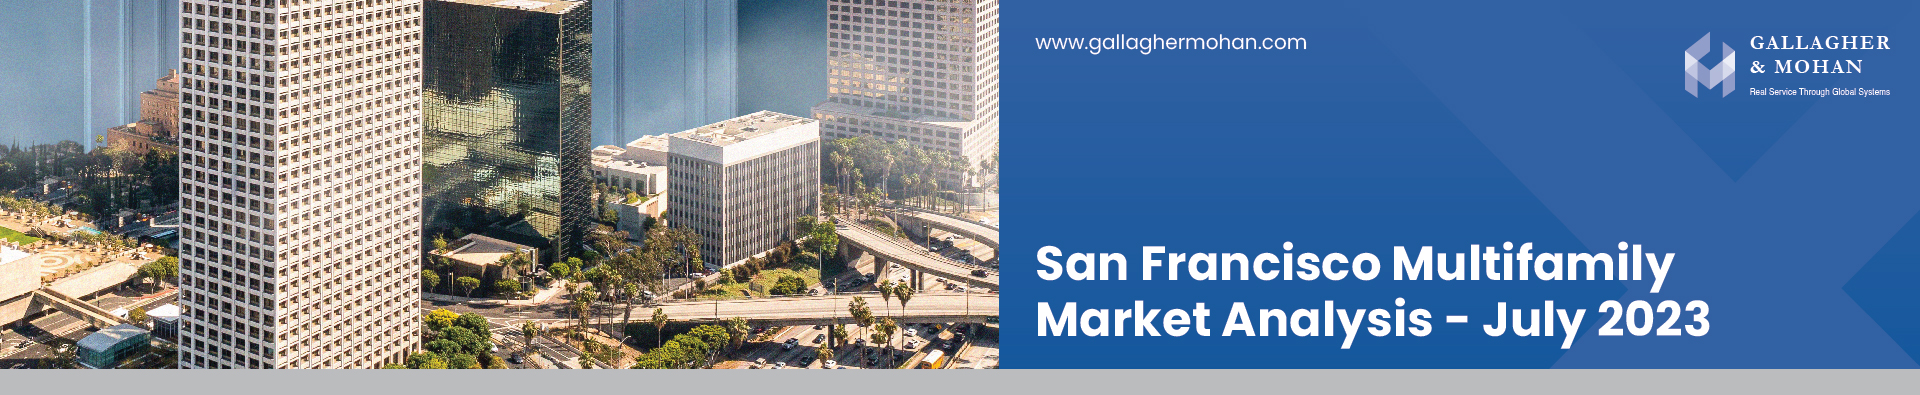 San Francisco Multifamily Market Analysis July 2023